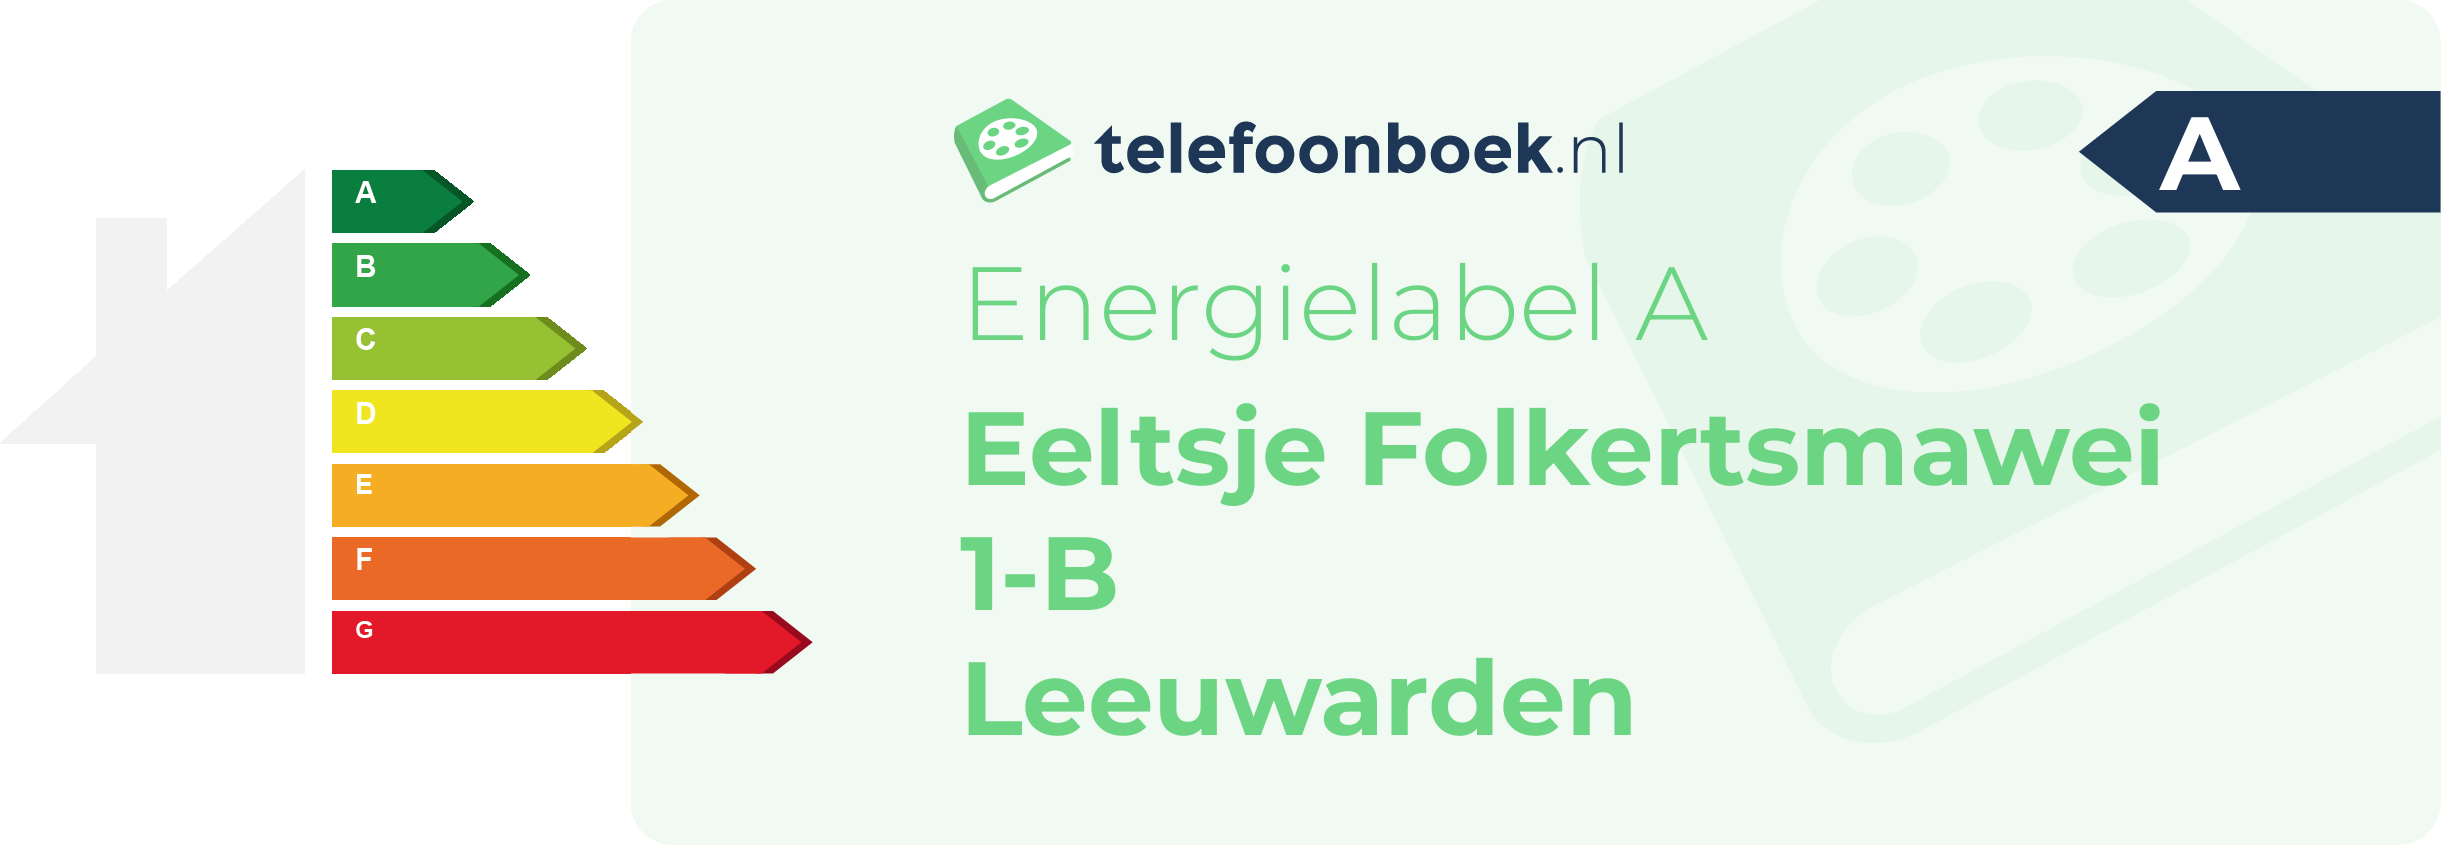 Energielabel Eeltsje Folkertsmawei 1-B Leeuwarden